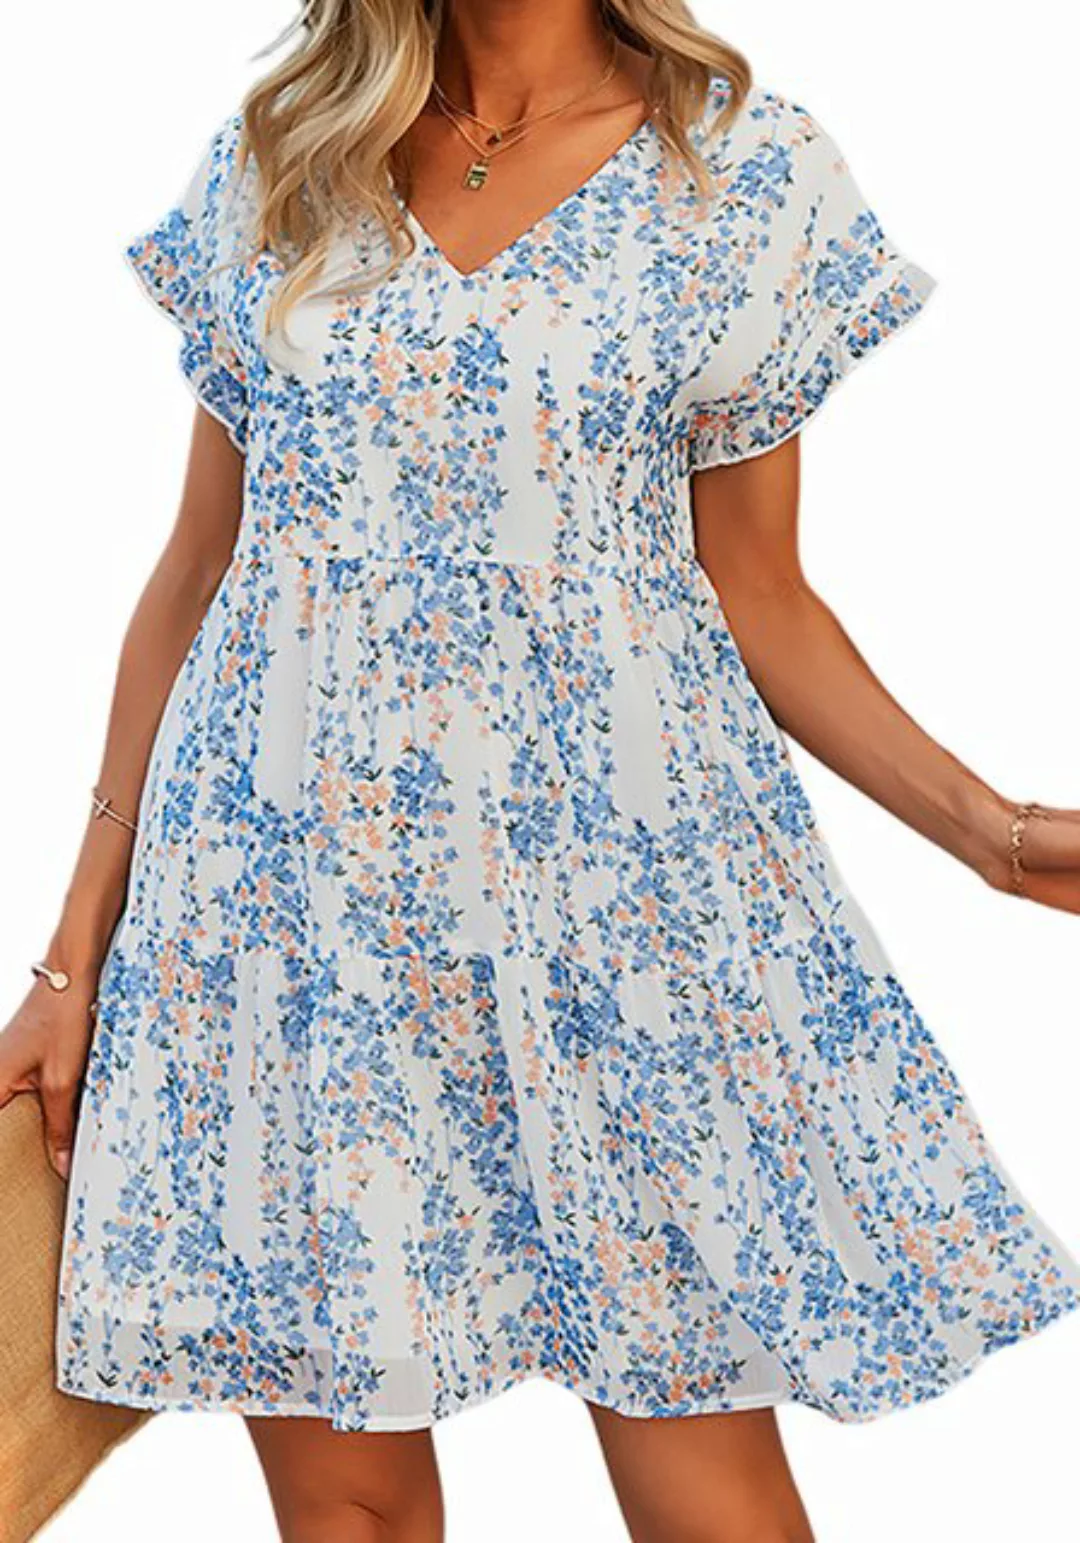 Lovolotti Sommerkleid Kleid Damen LO-KLDE-L01 Kleider Blumenkleid Dress Blu günstig online kaufen